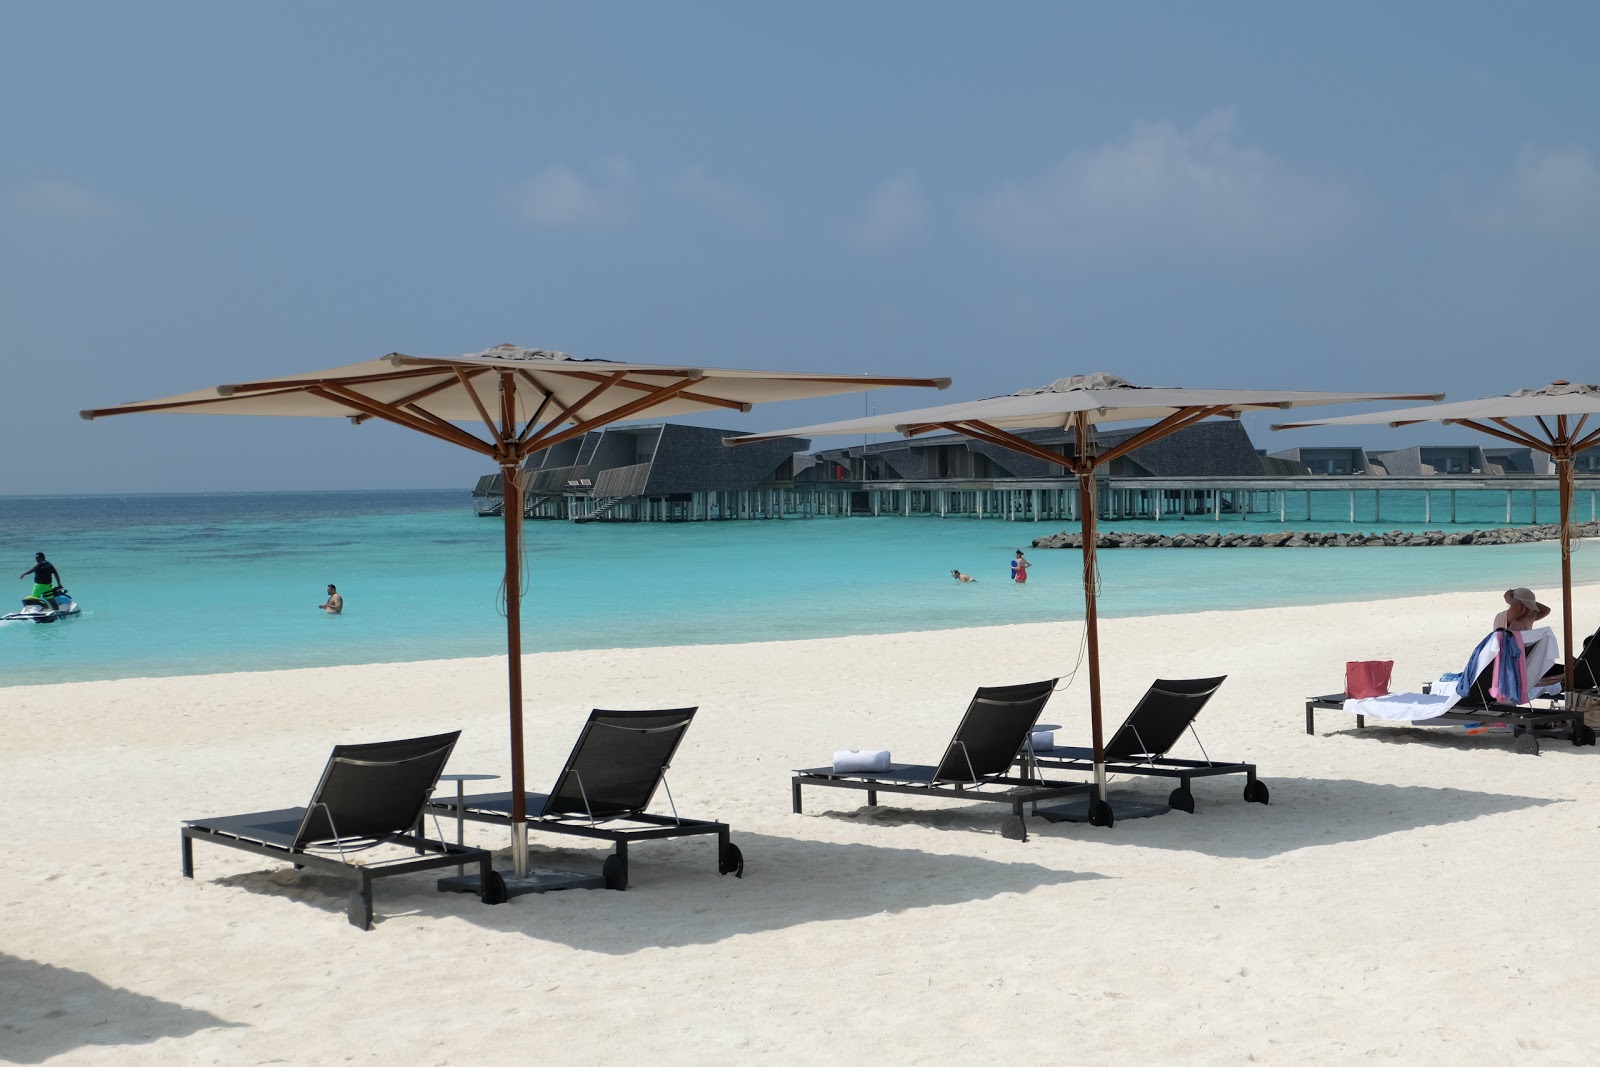 Fotografie cu Plaja Regis - locul popular printre cunoscătorii de relaxare